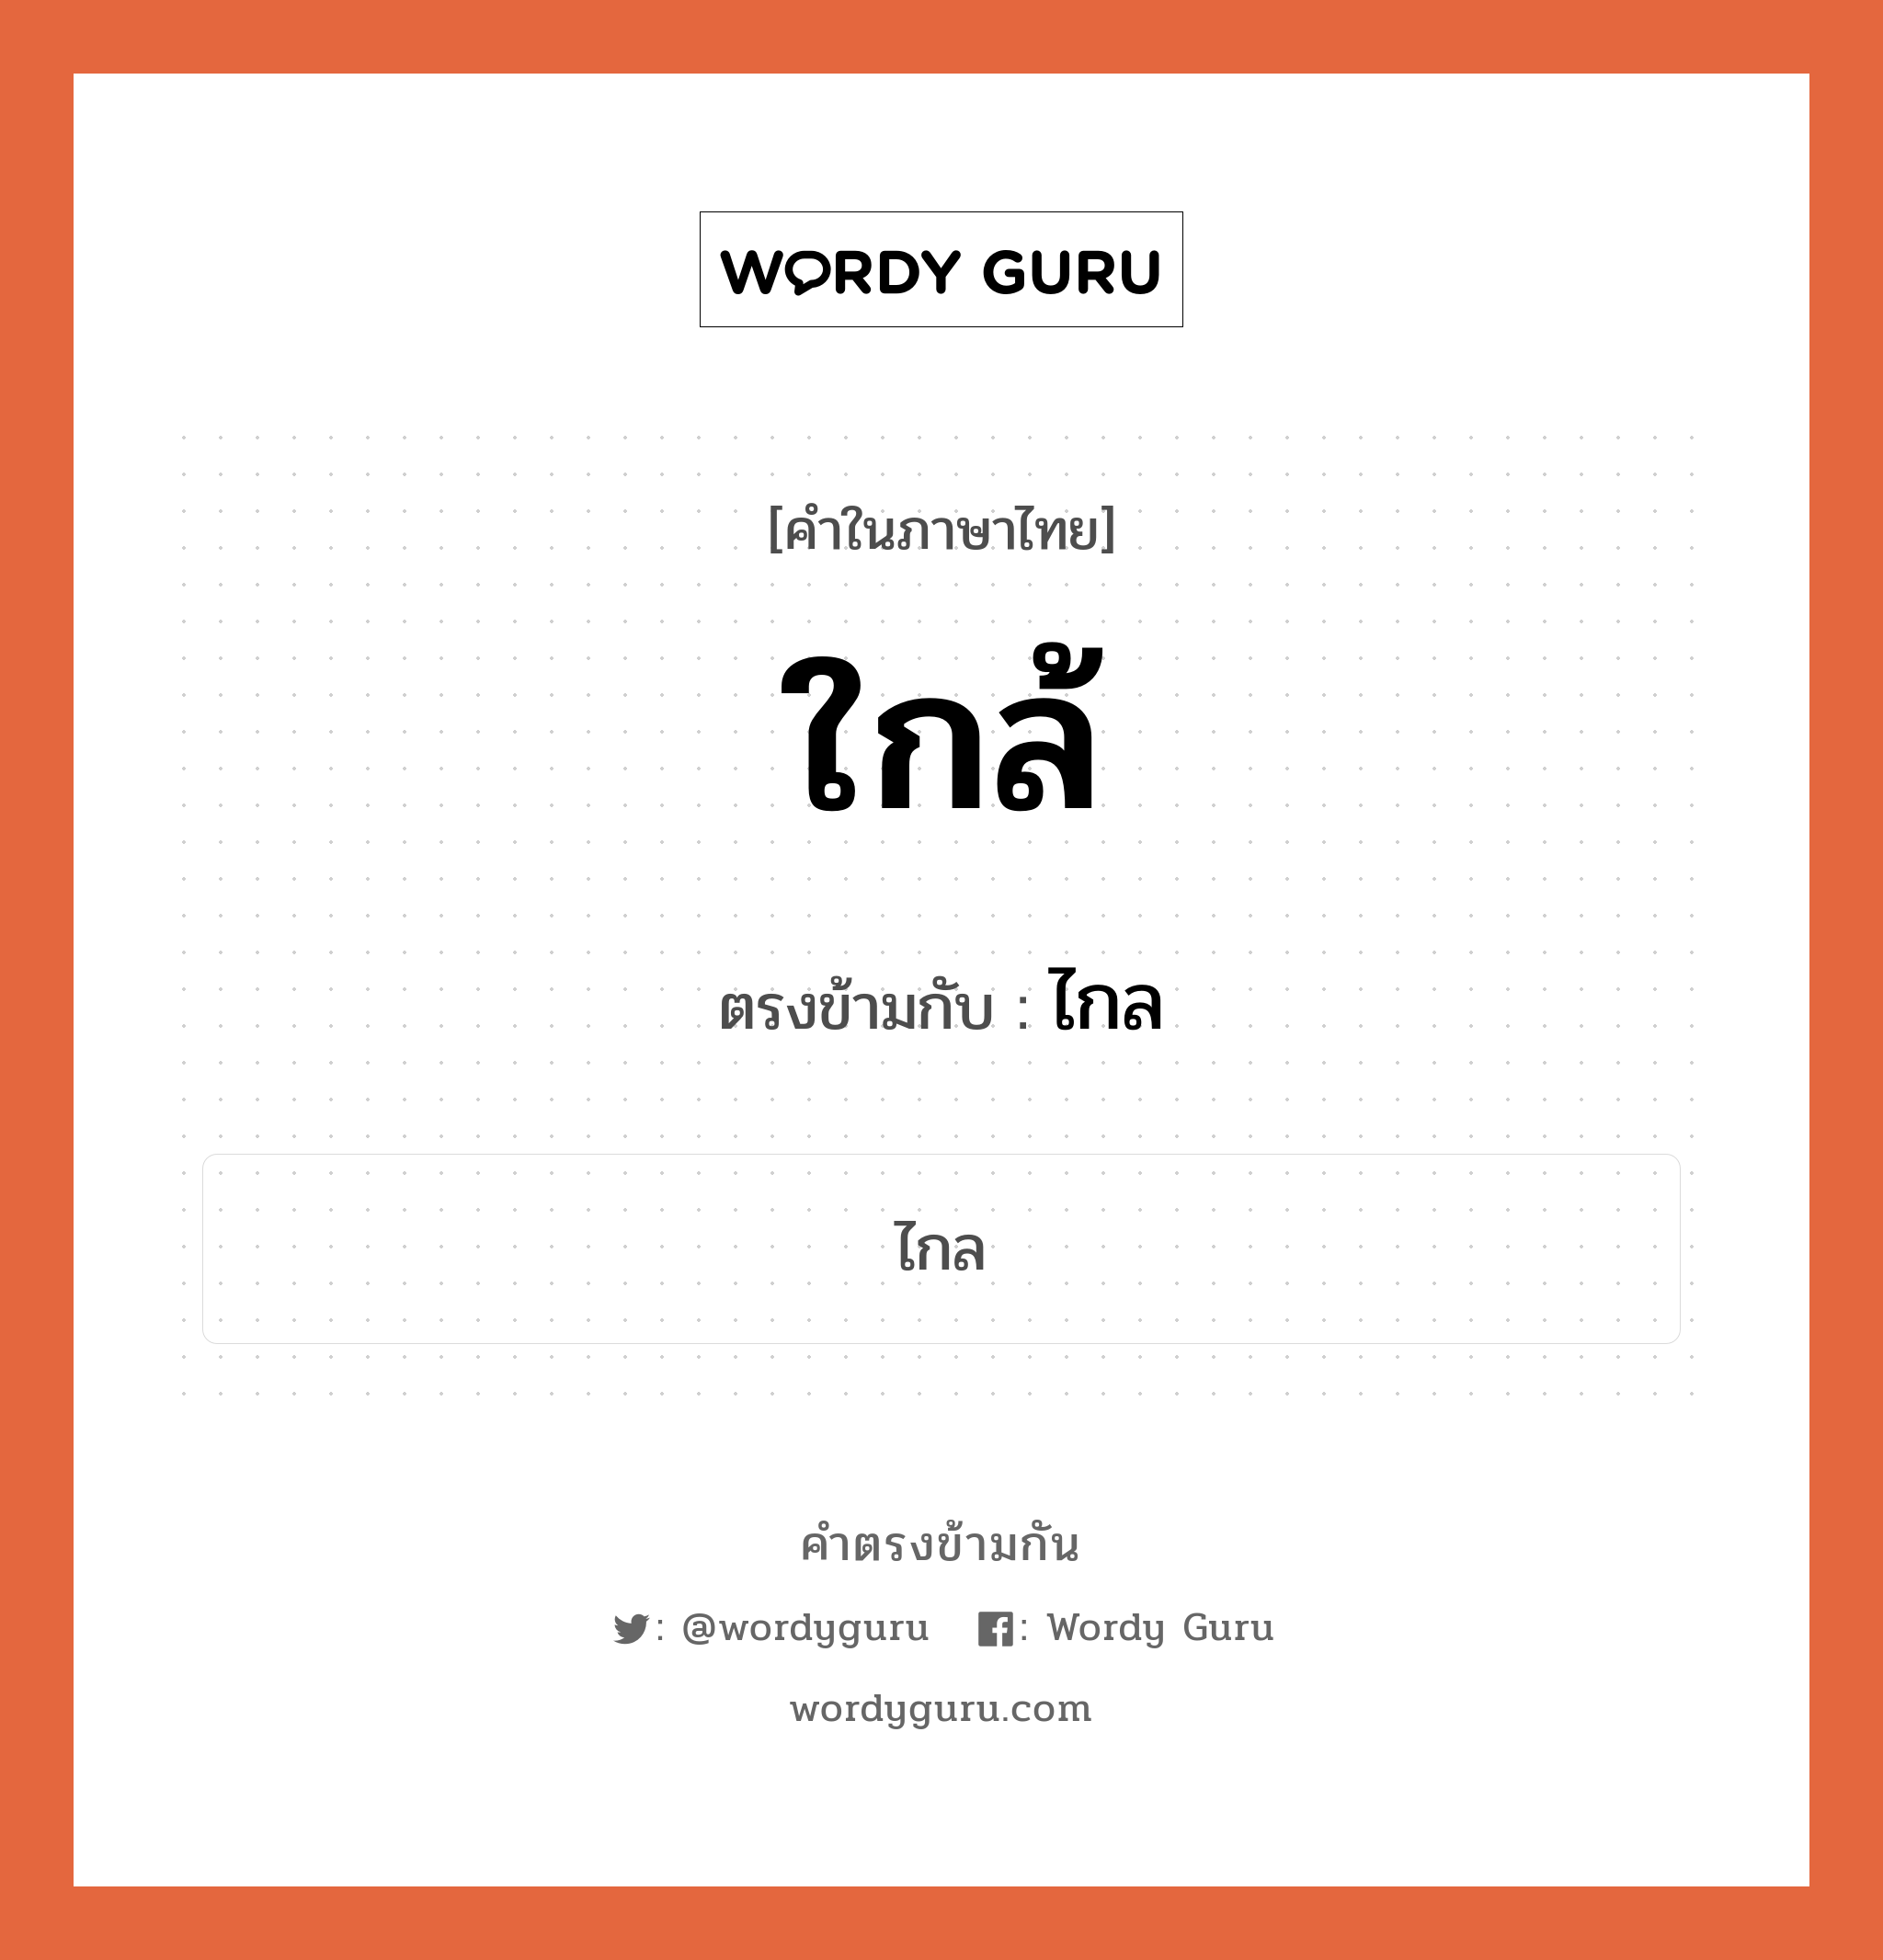 ใกล้ เป็นคำตรงข้ามกับคำไหนบ้าง?, คำในภาษาไทย ใกล้ ตรงข้ามกับ ไกล หมวด ไกล